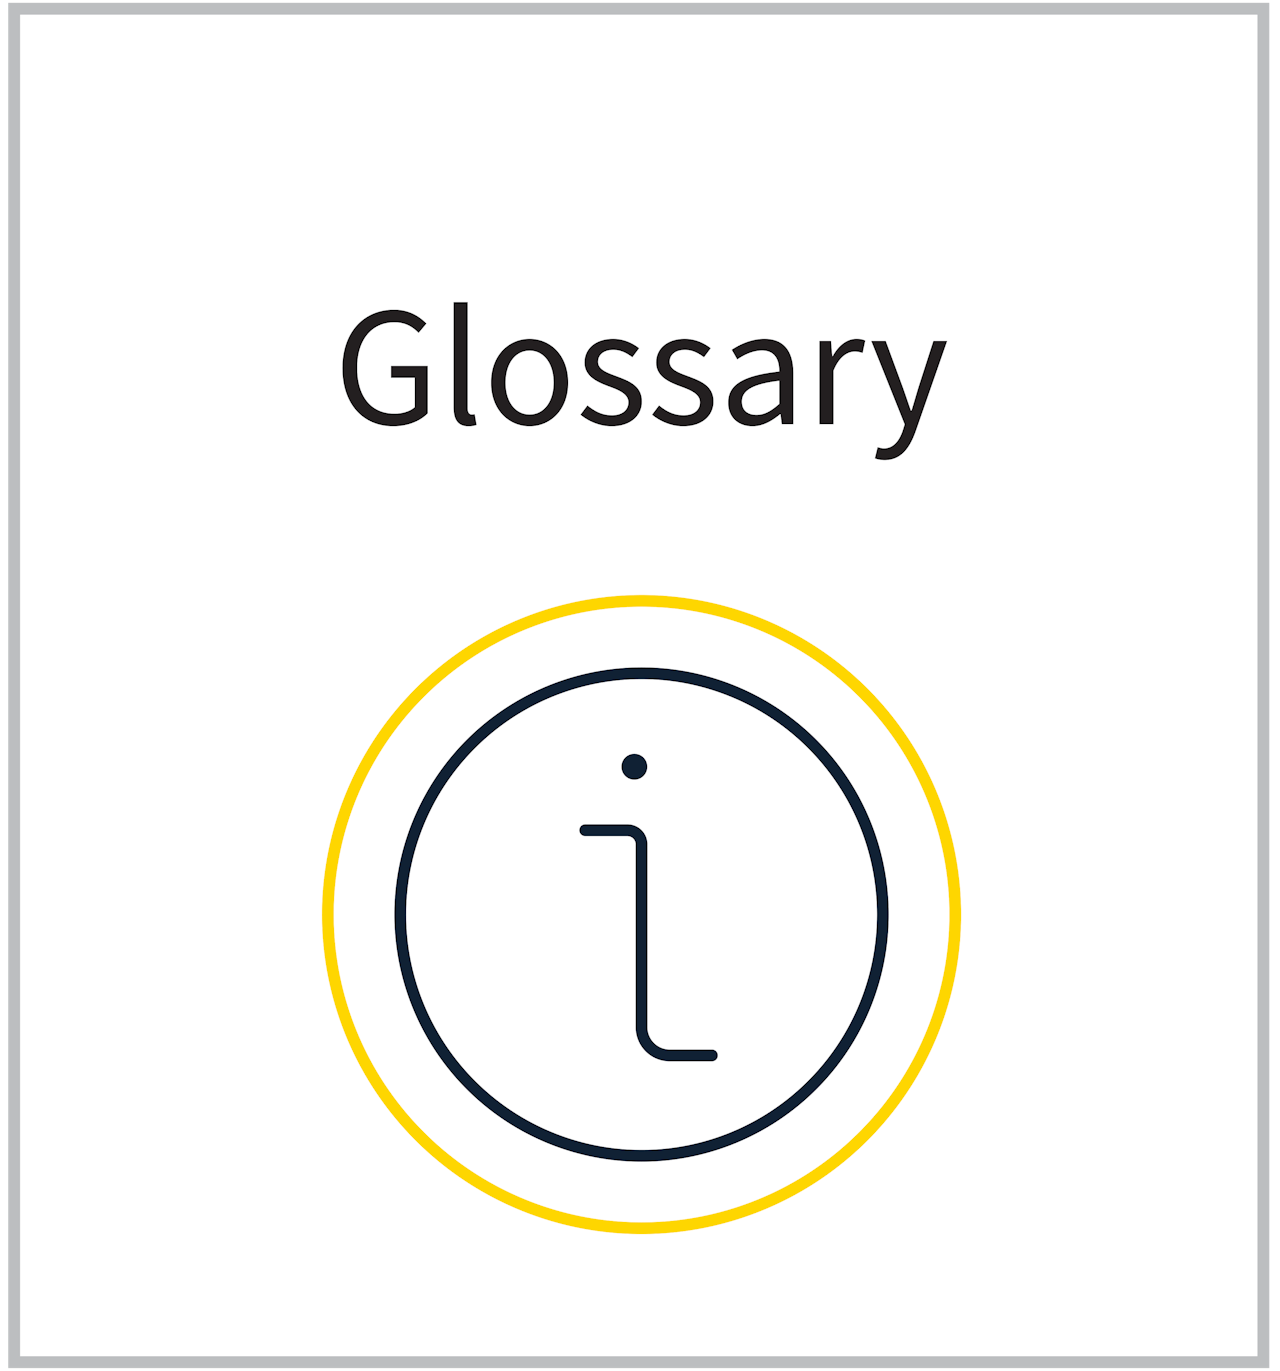 Glossary Icon